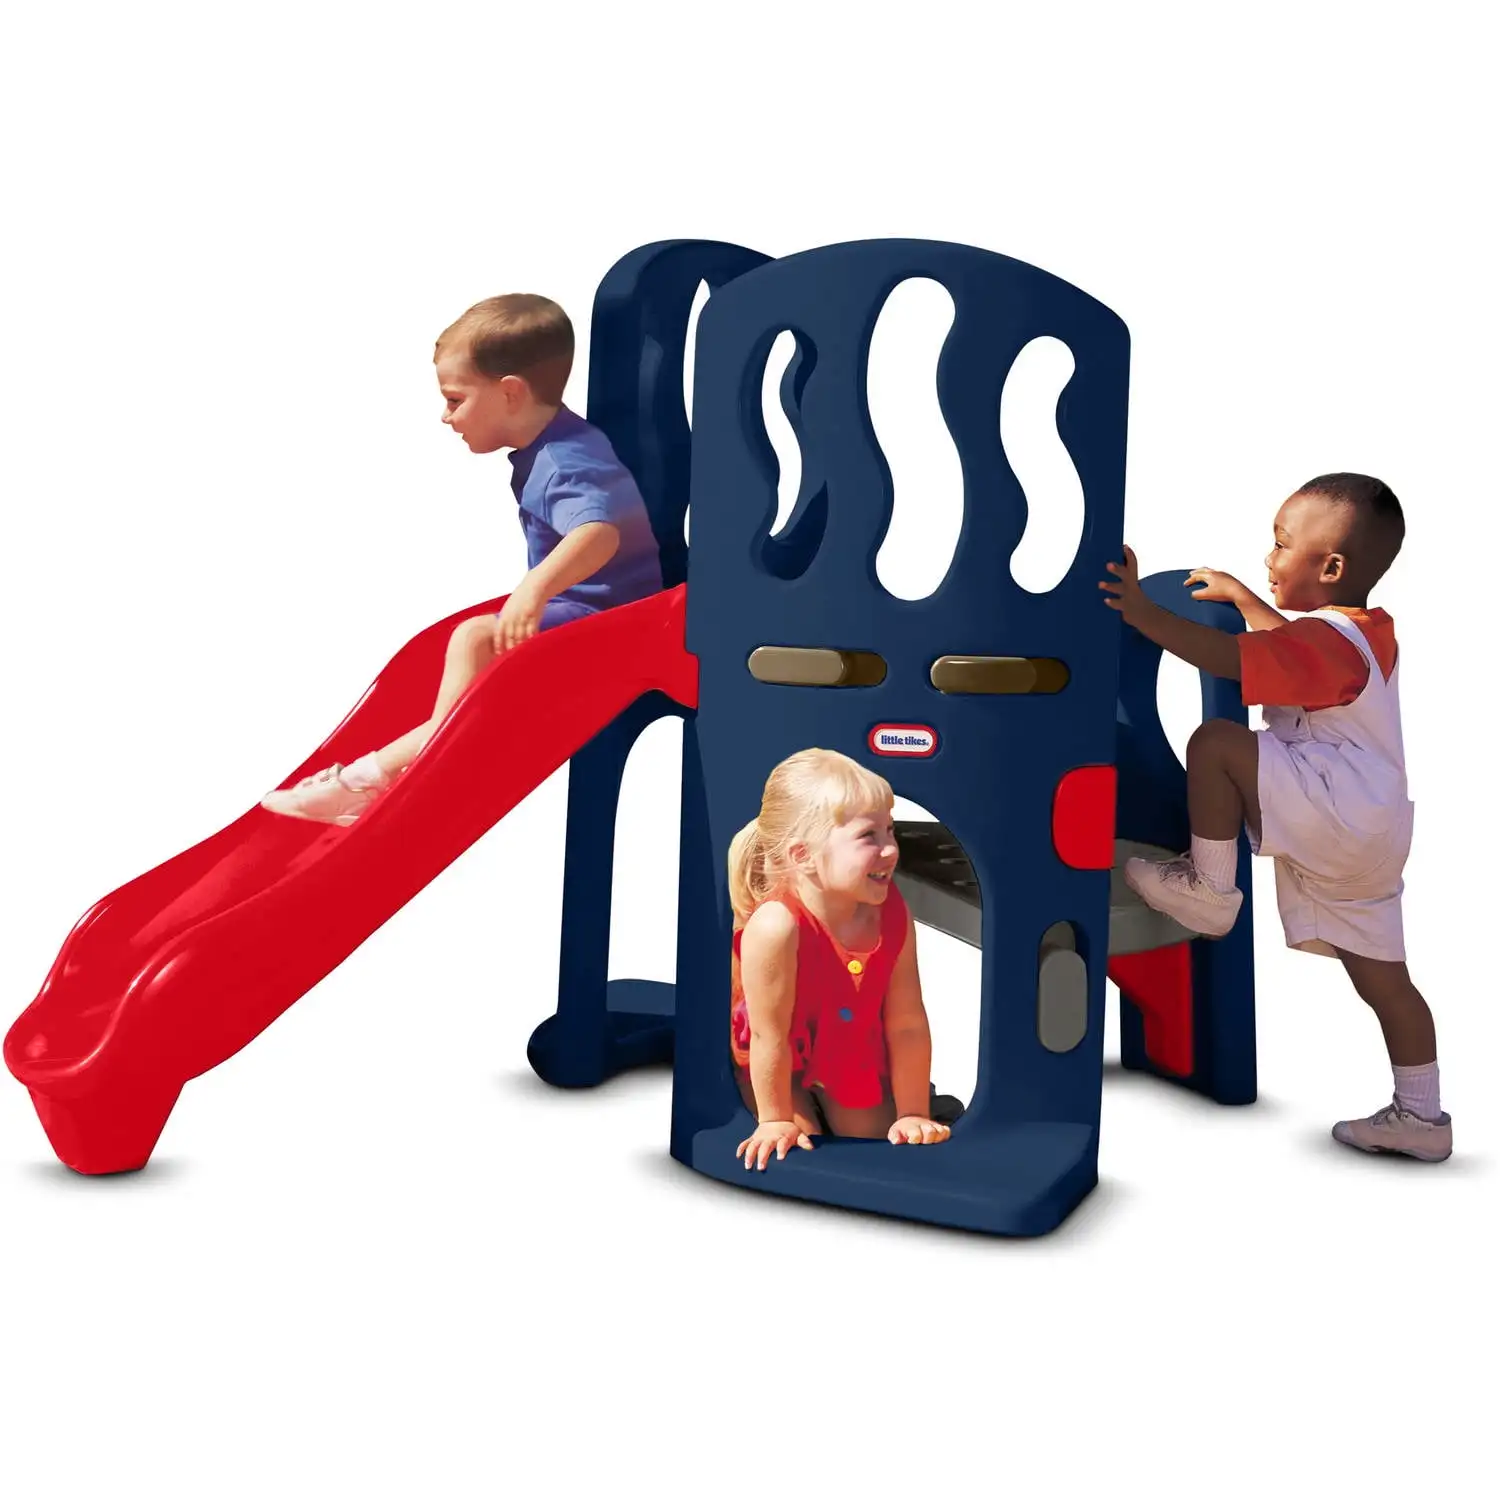 

Игрушка для скалолазания Little Tikes, синяя и красная-игрушка для скалолазания и скольжения для детей от 2 до 6 лет